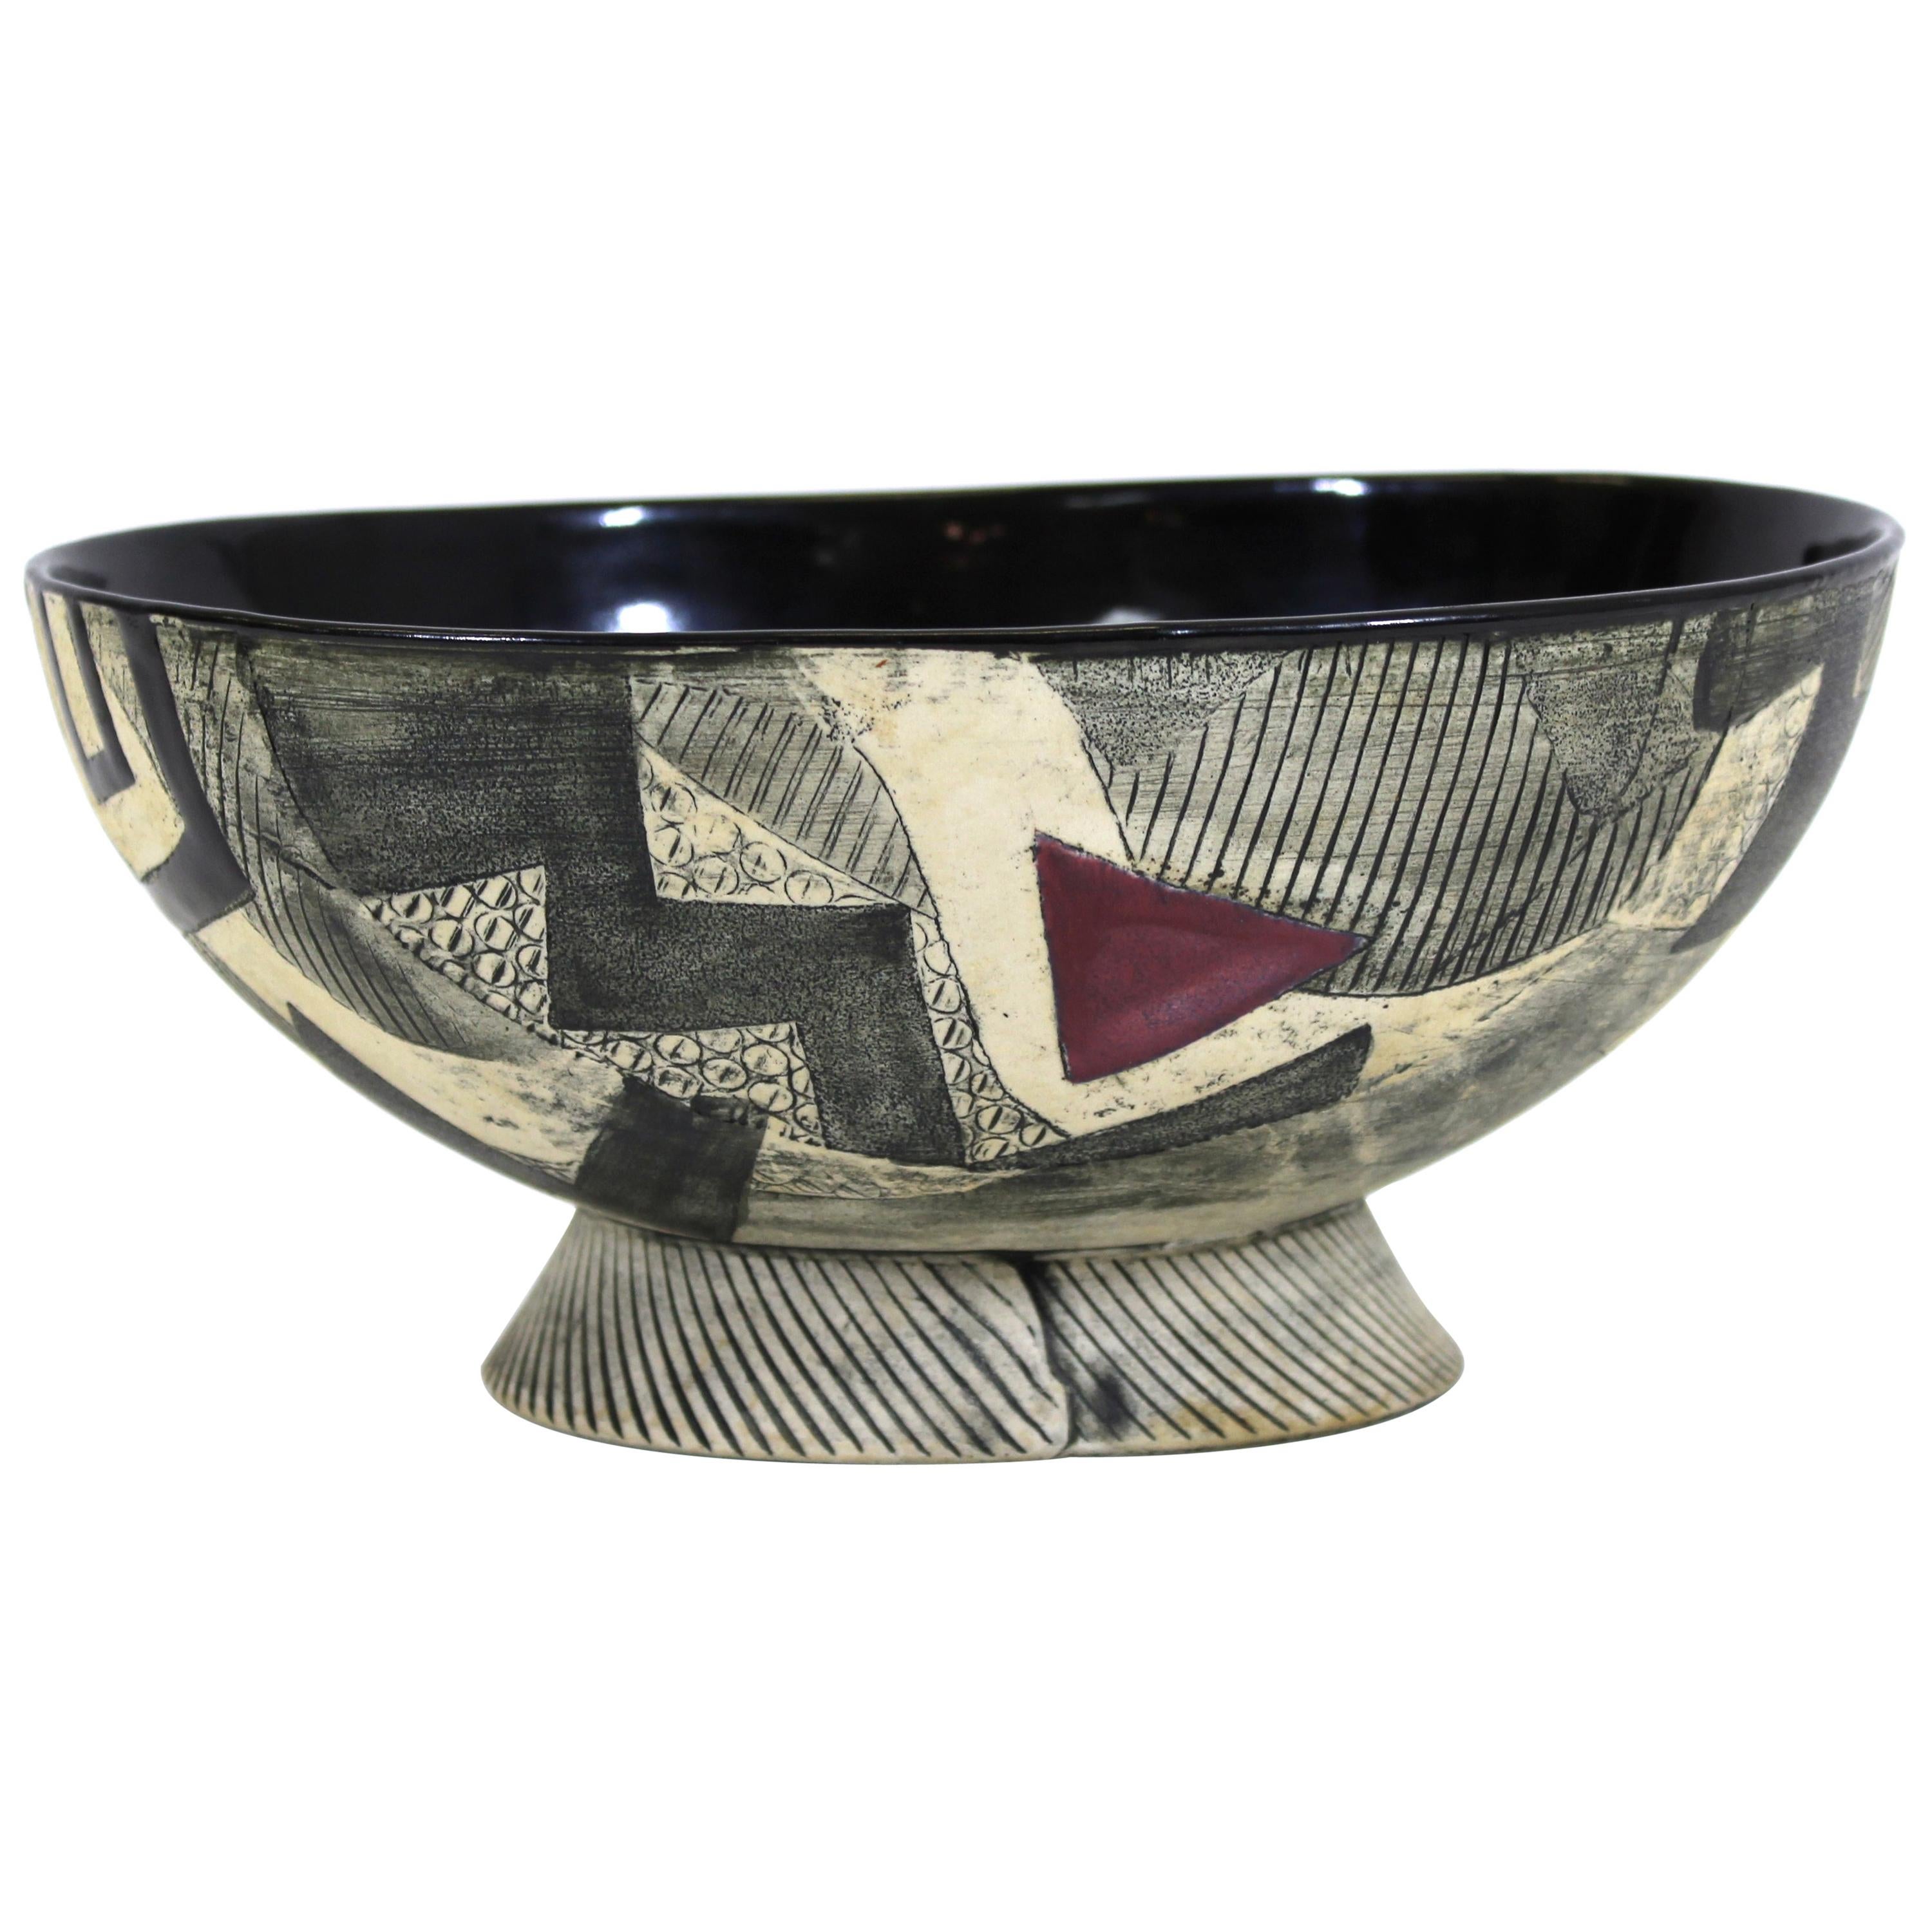 Postmodern Art Studio Ceramic Bowl